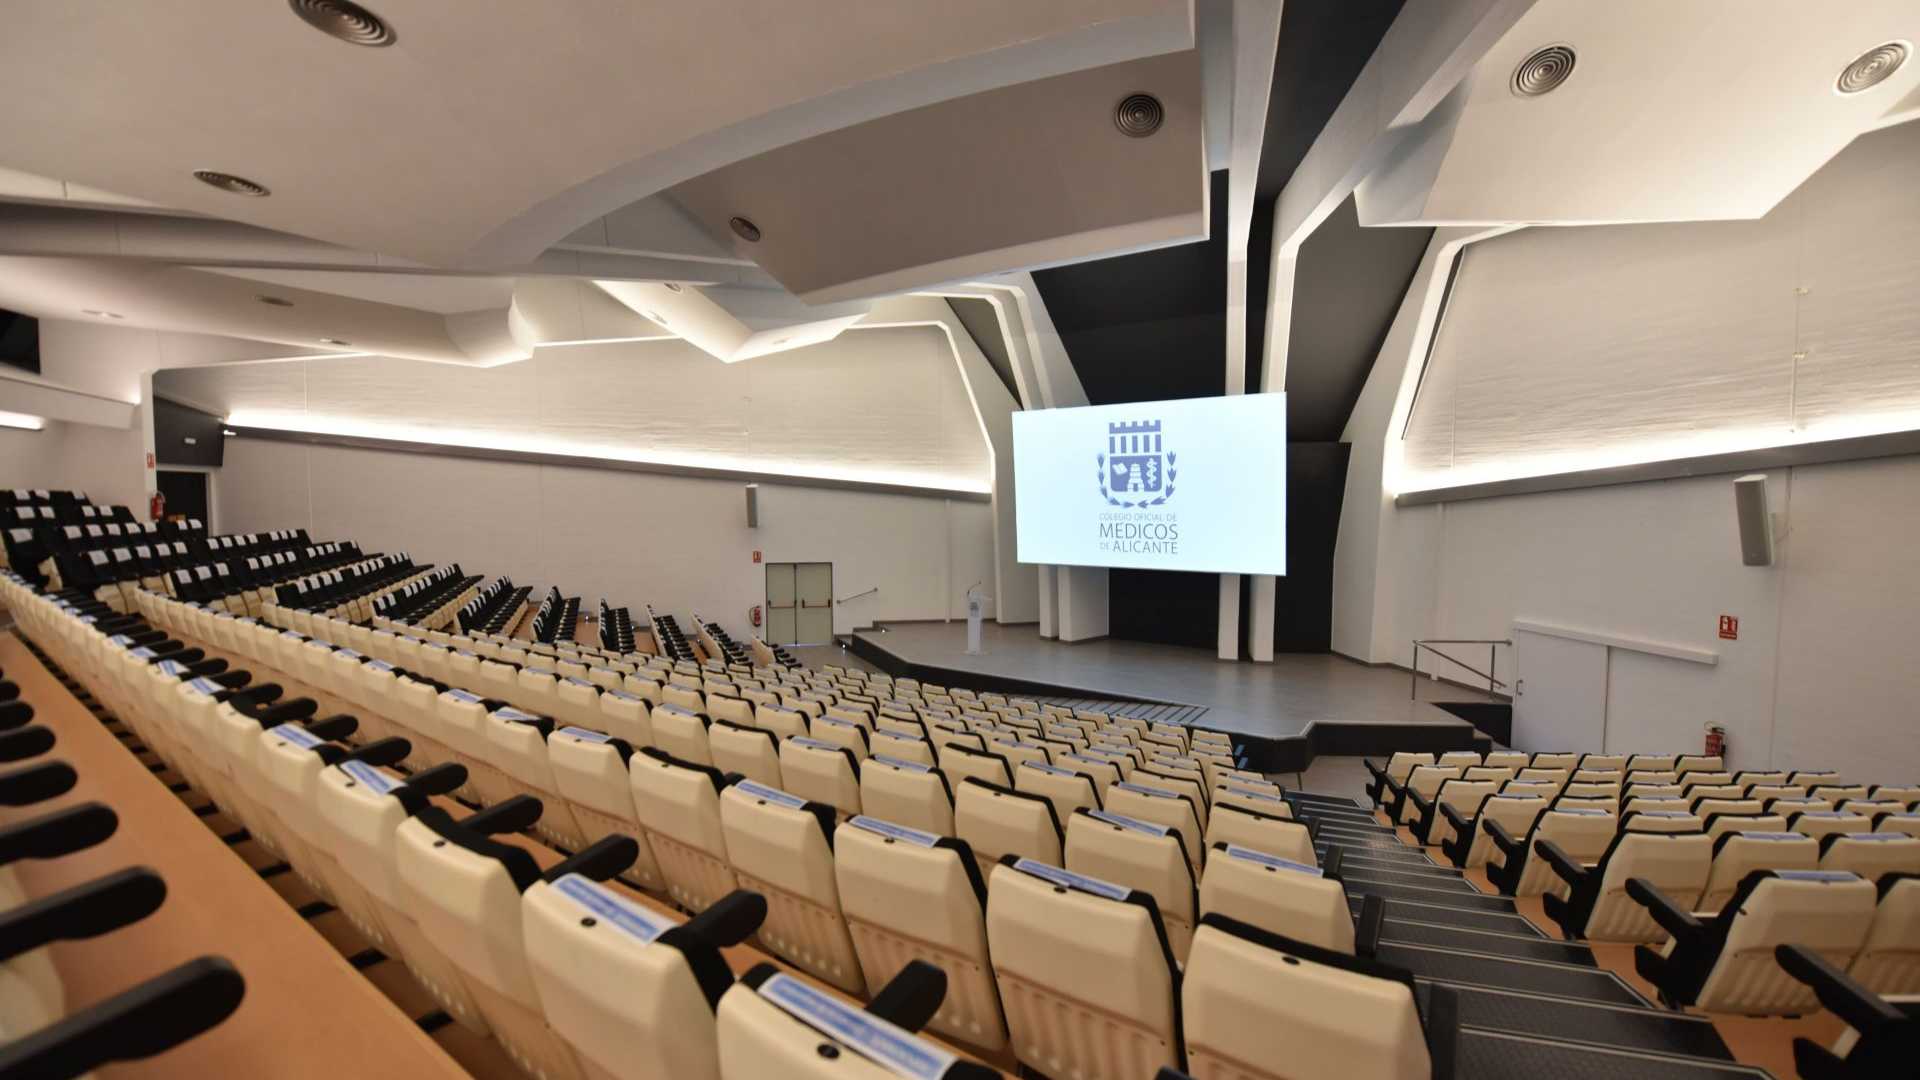 Alicante Convention Center